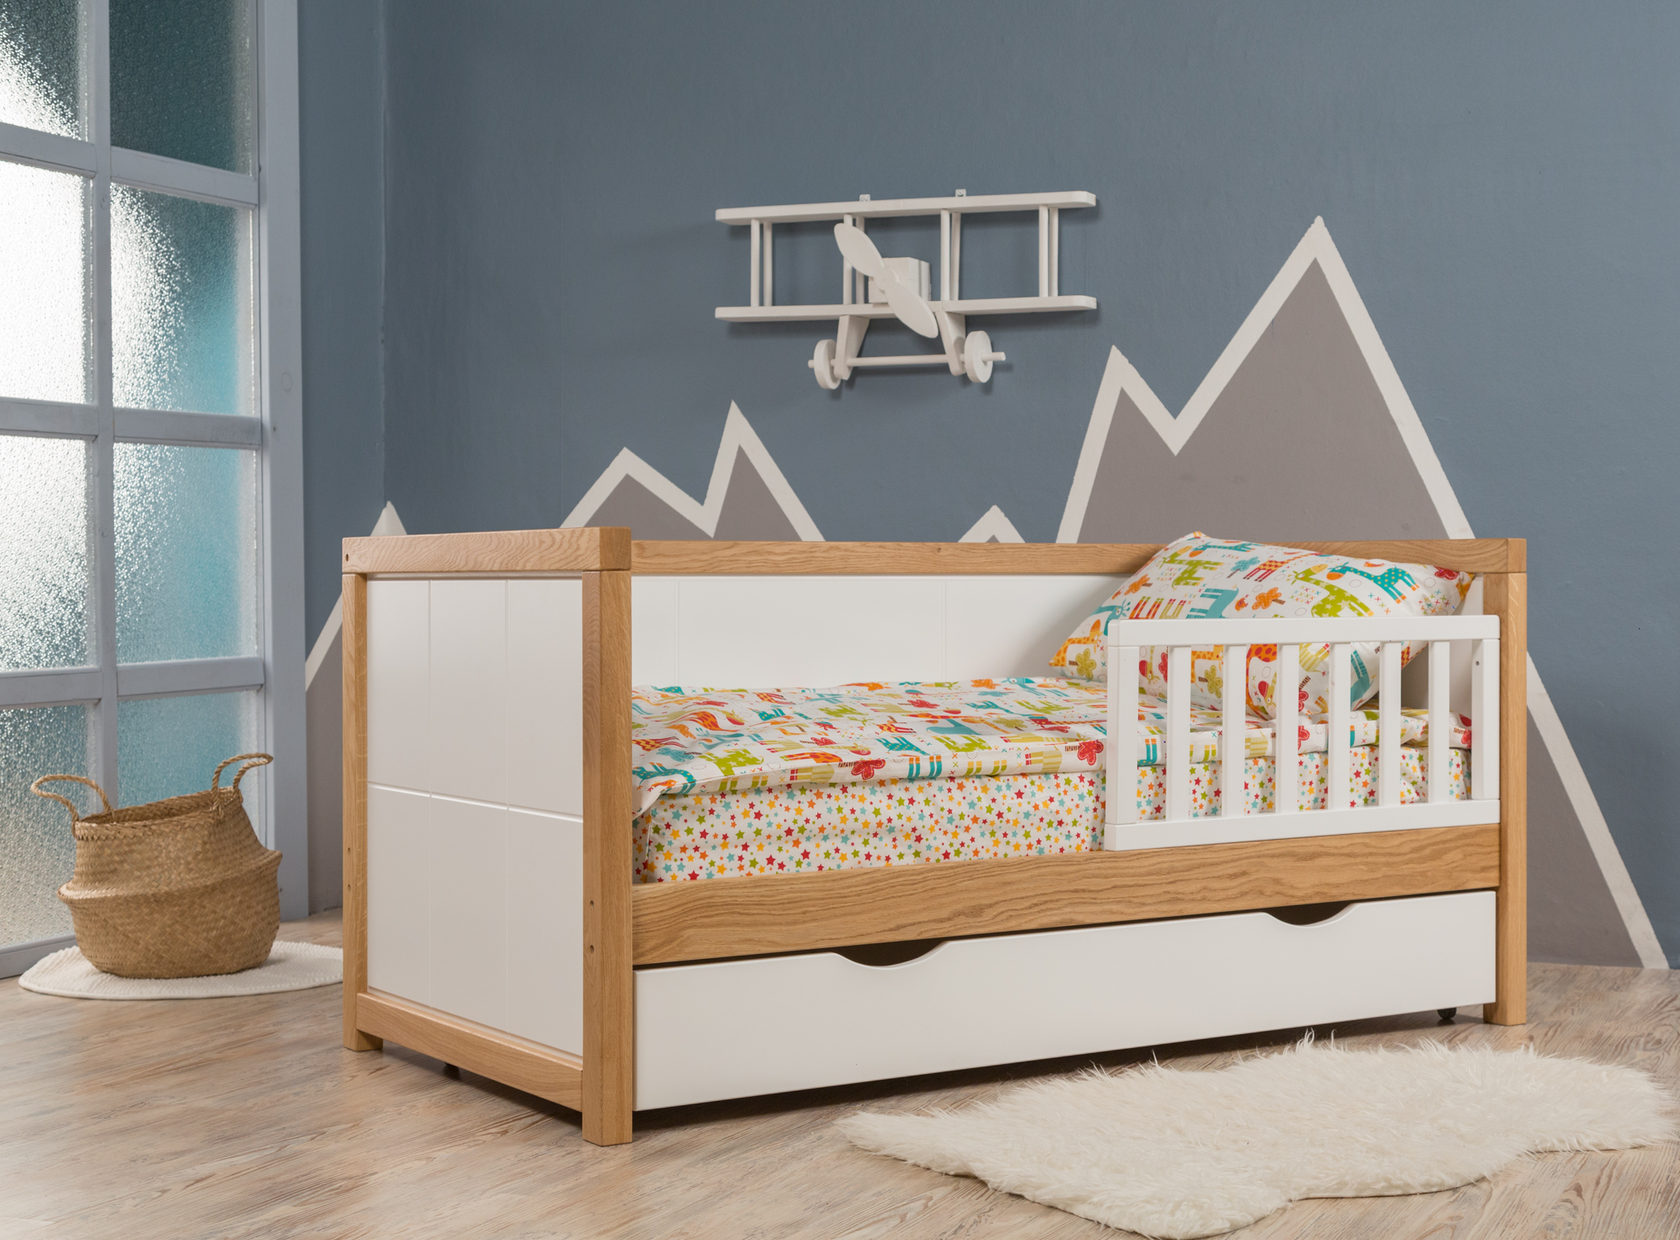 Кровать для новорожденных с ящиками